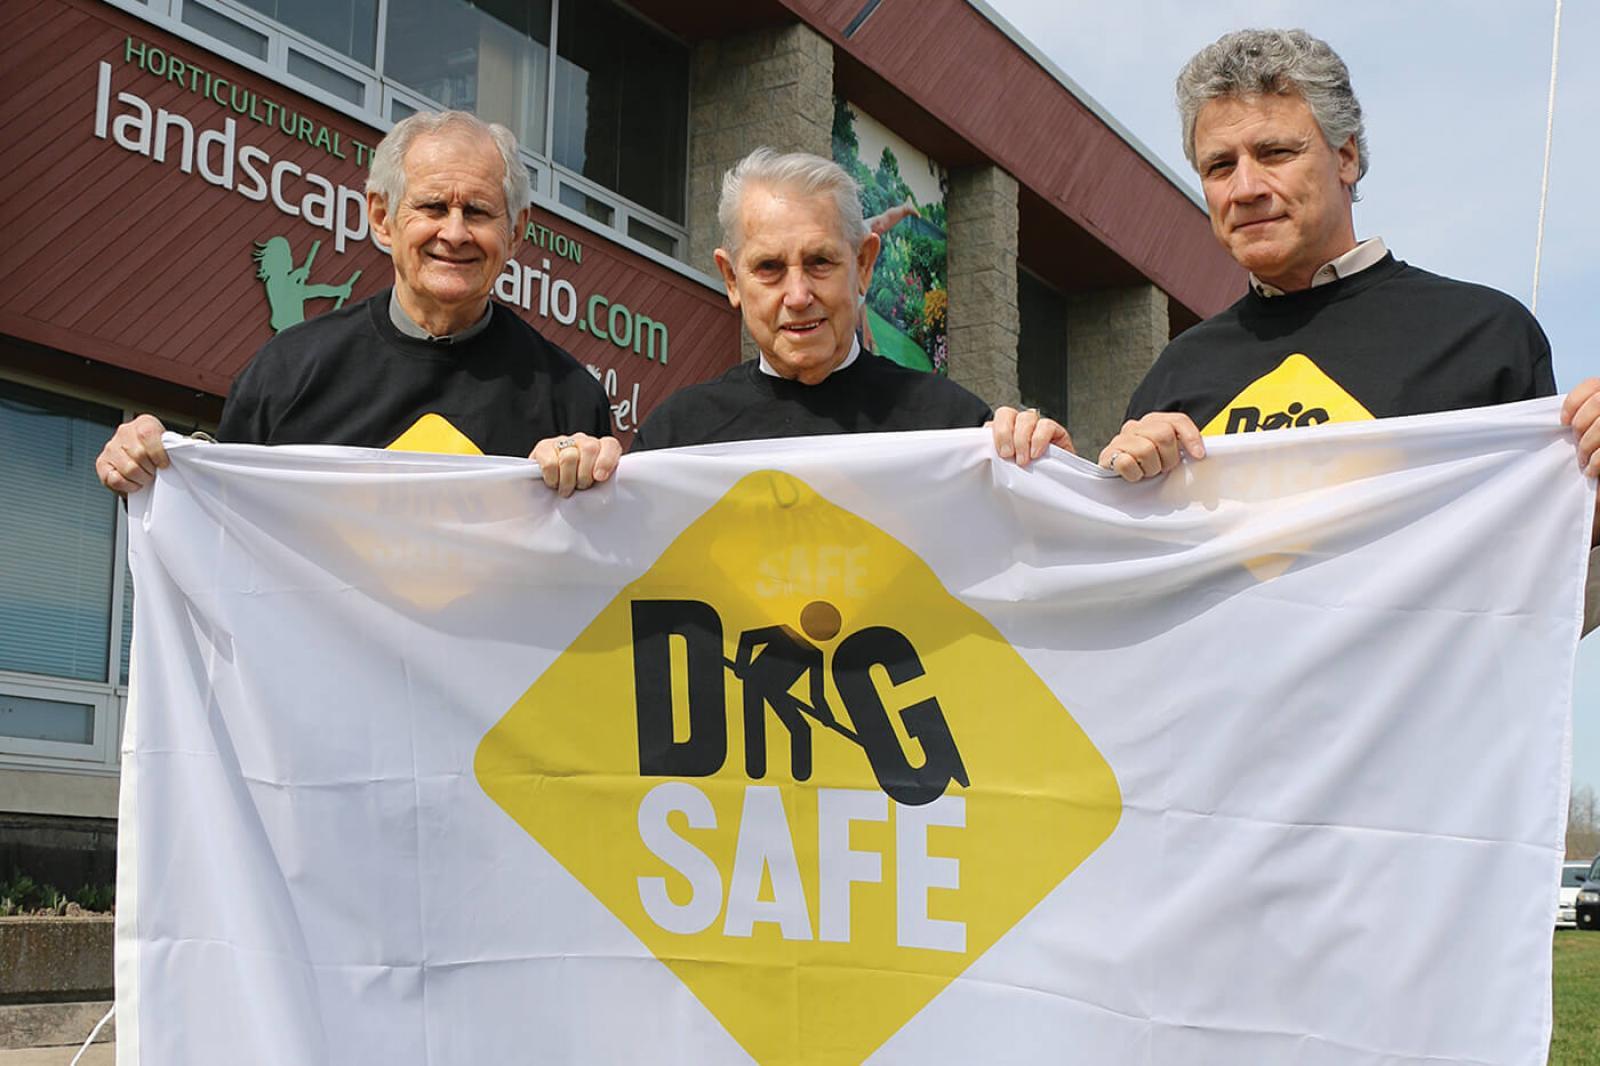 Dig Safe celebrated at Landscape Ontario